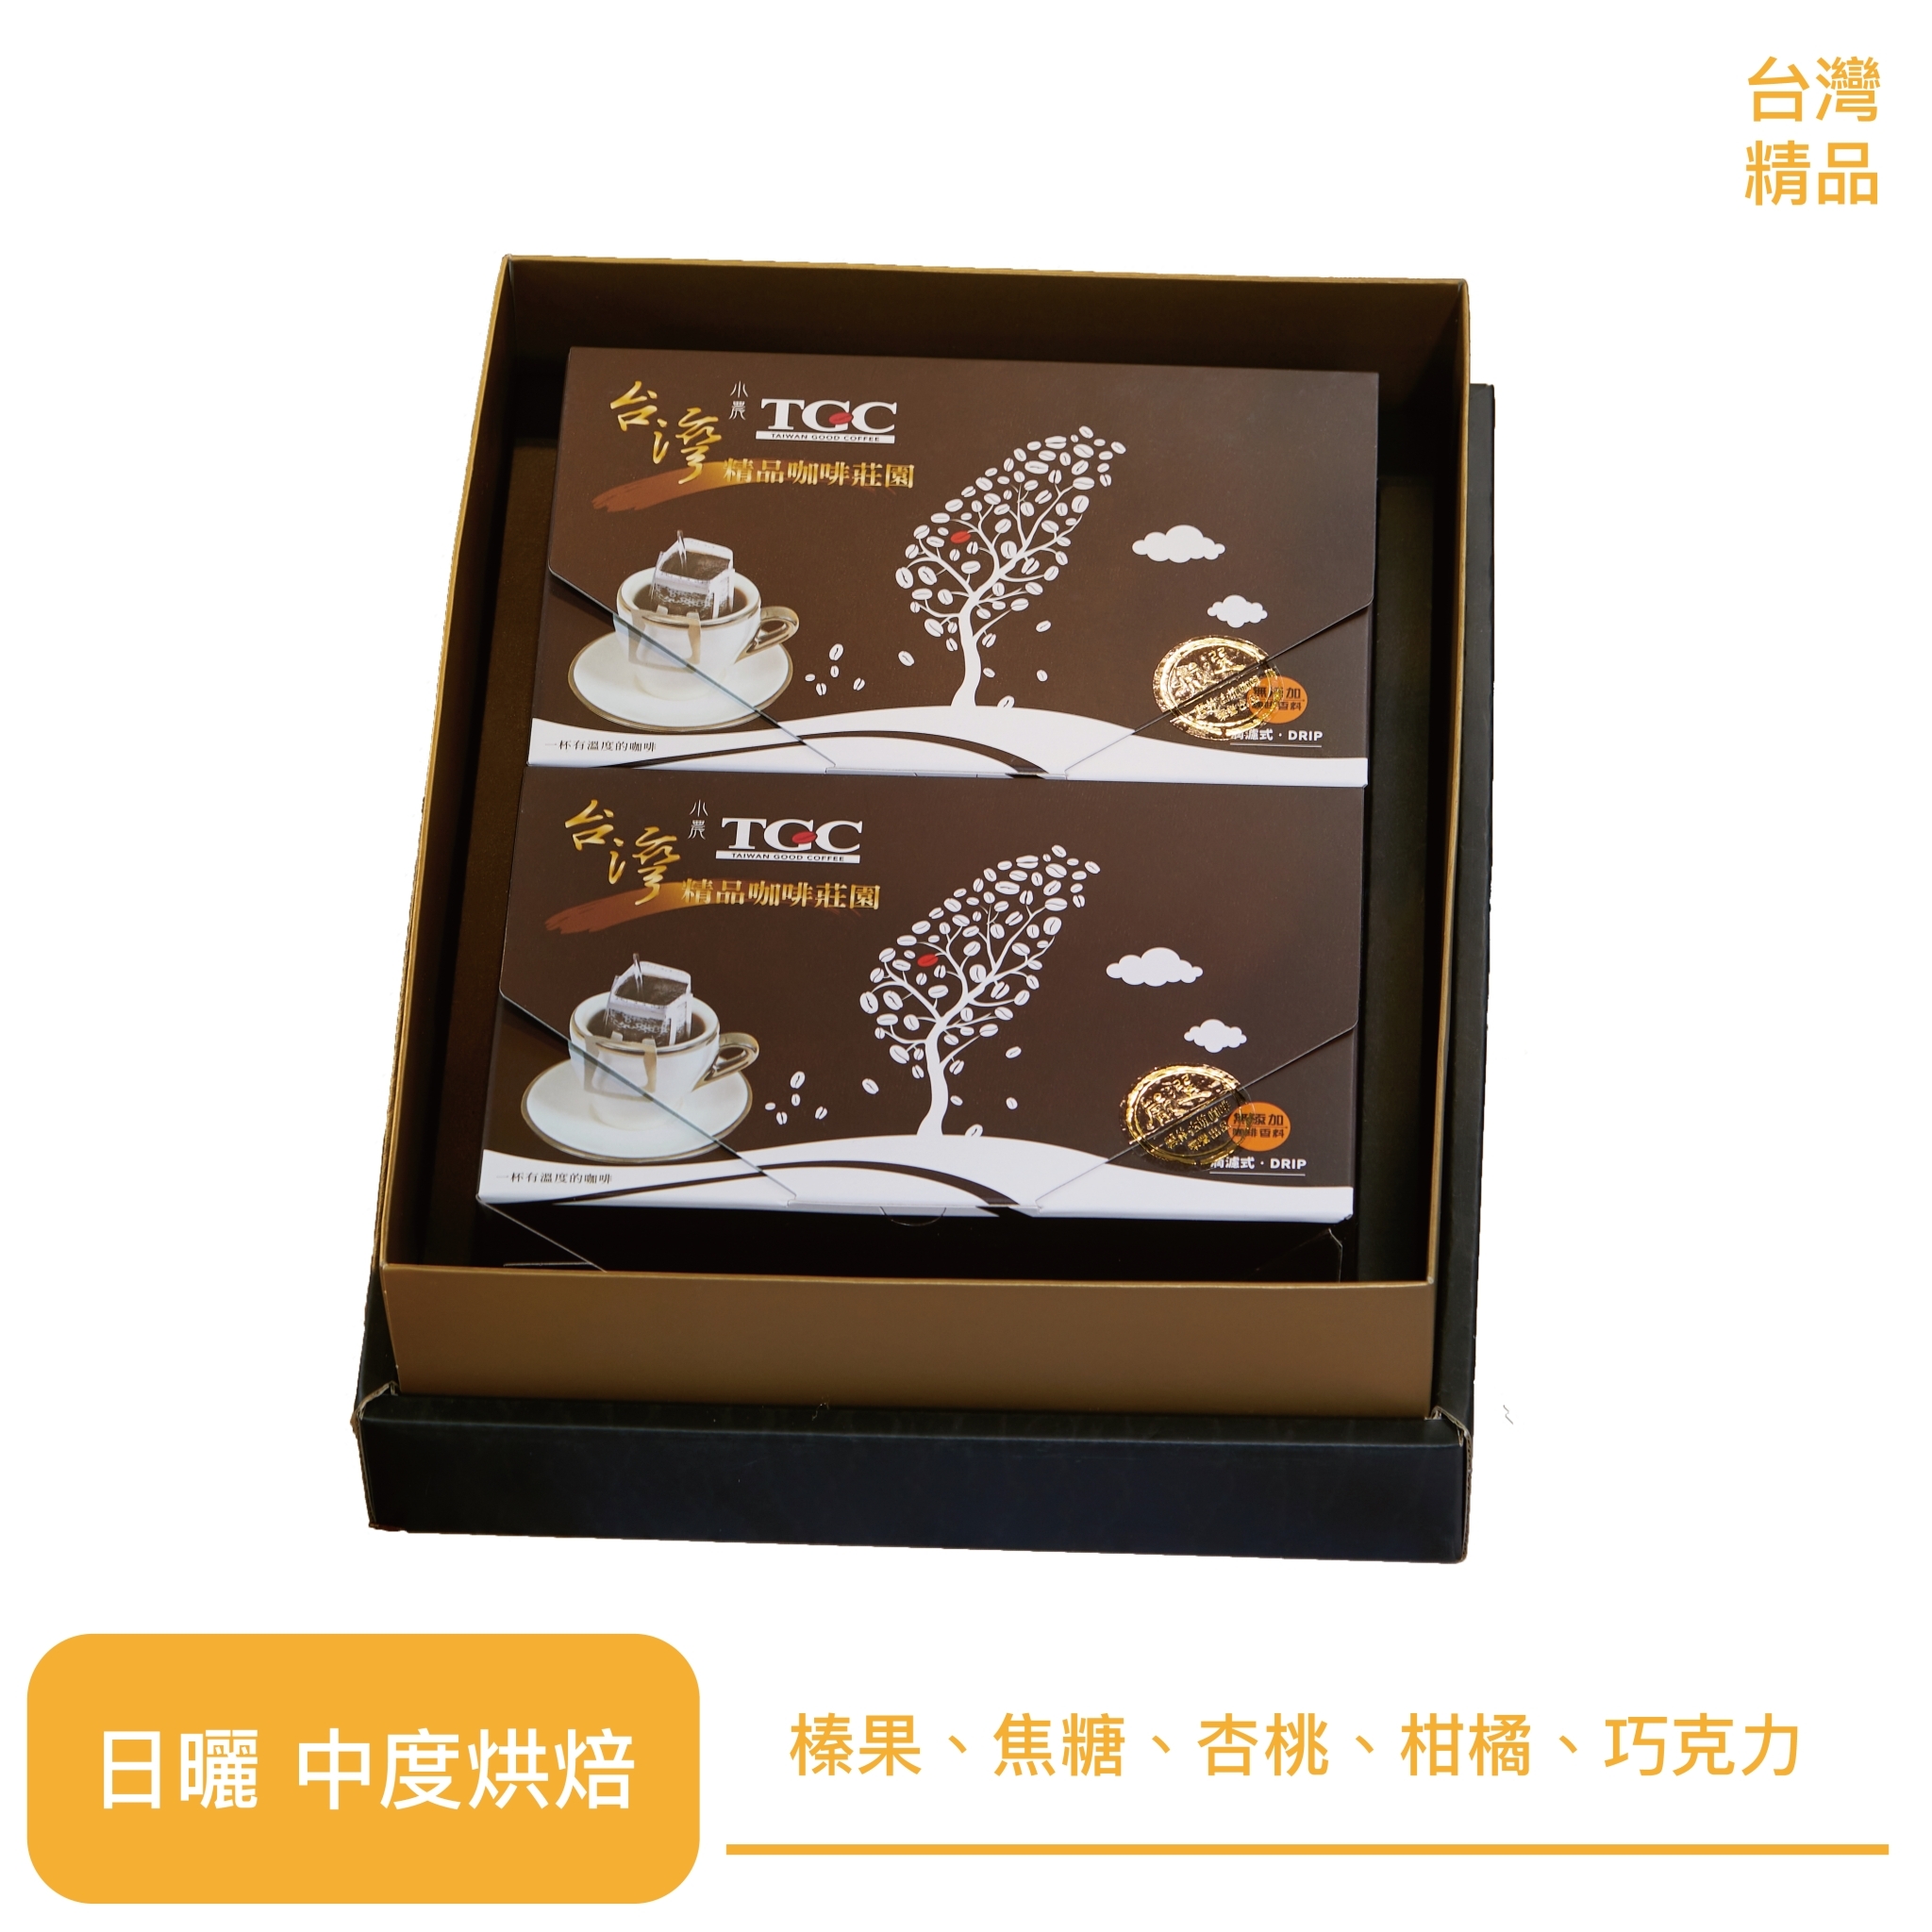 【TGC】 台灣莊園咖啡禮盒12包/盒*2